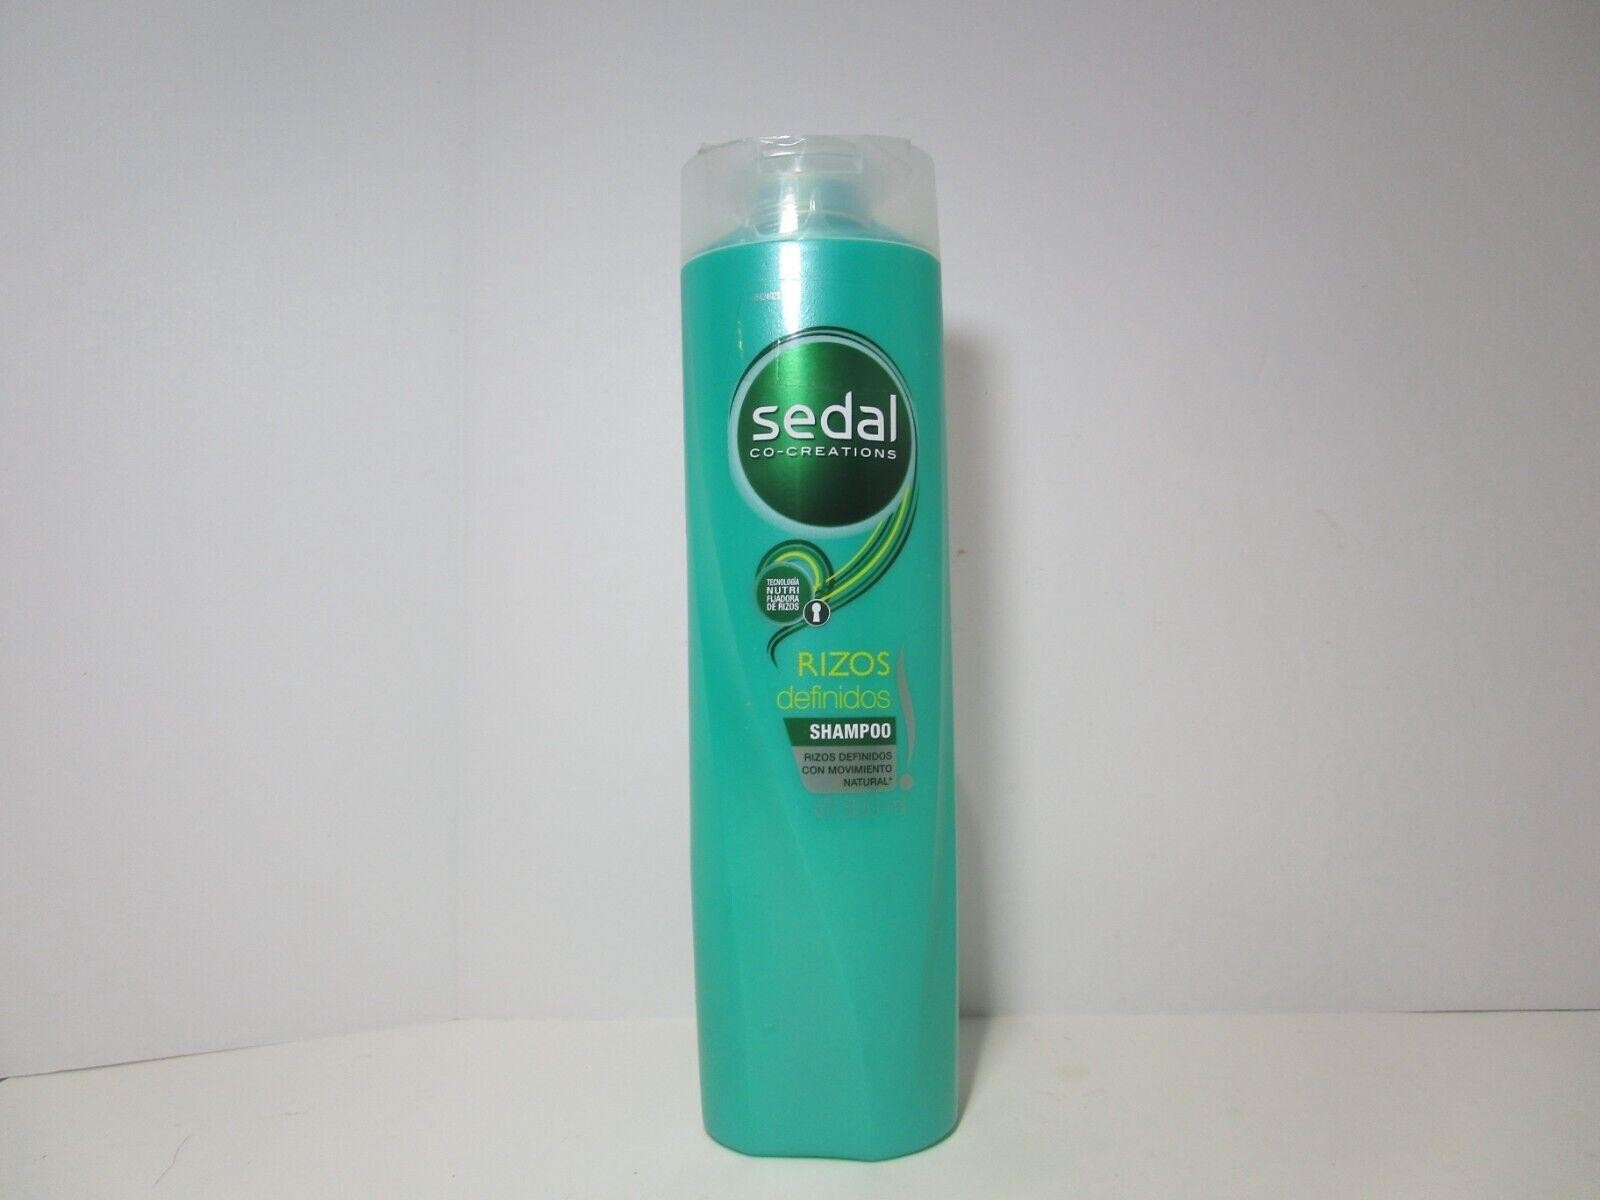 Sedal Co-Creations Rizos Definidos Shampoo, 300 Ml FREE SHIPPING